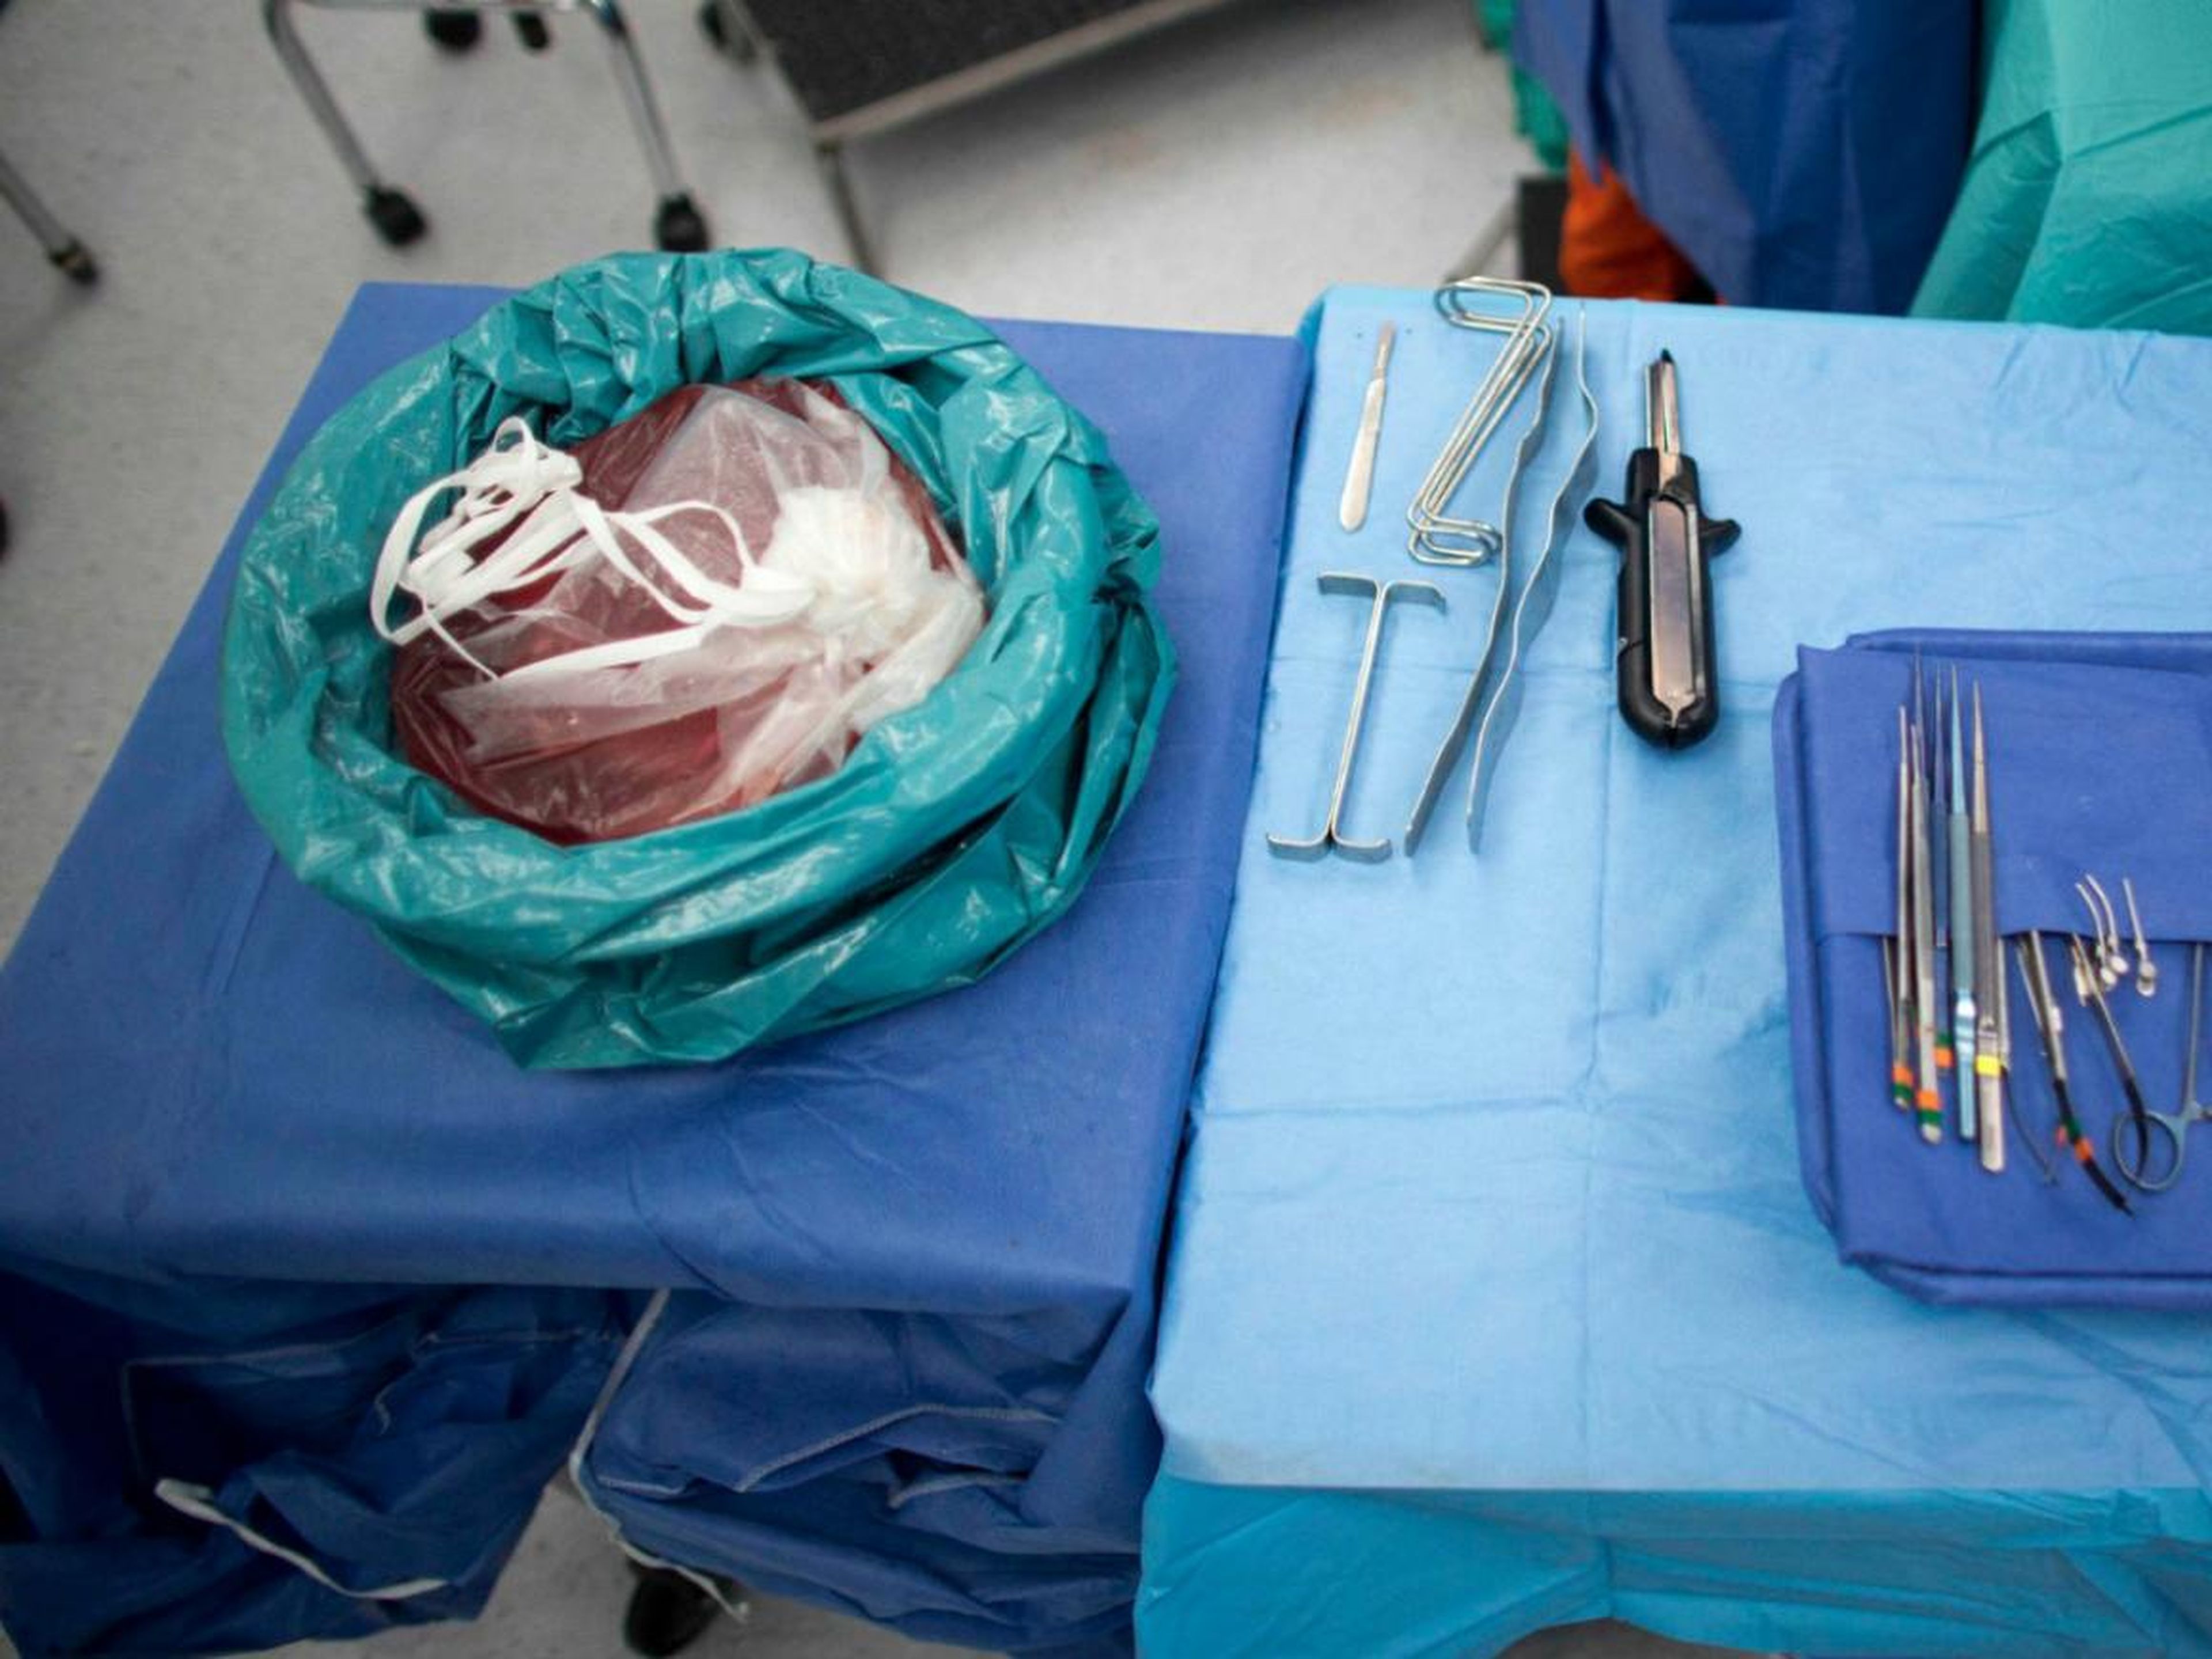 Trozo de hígado sano extraído de una persona en una bolsa antes de ser trasplantado.